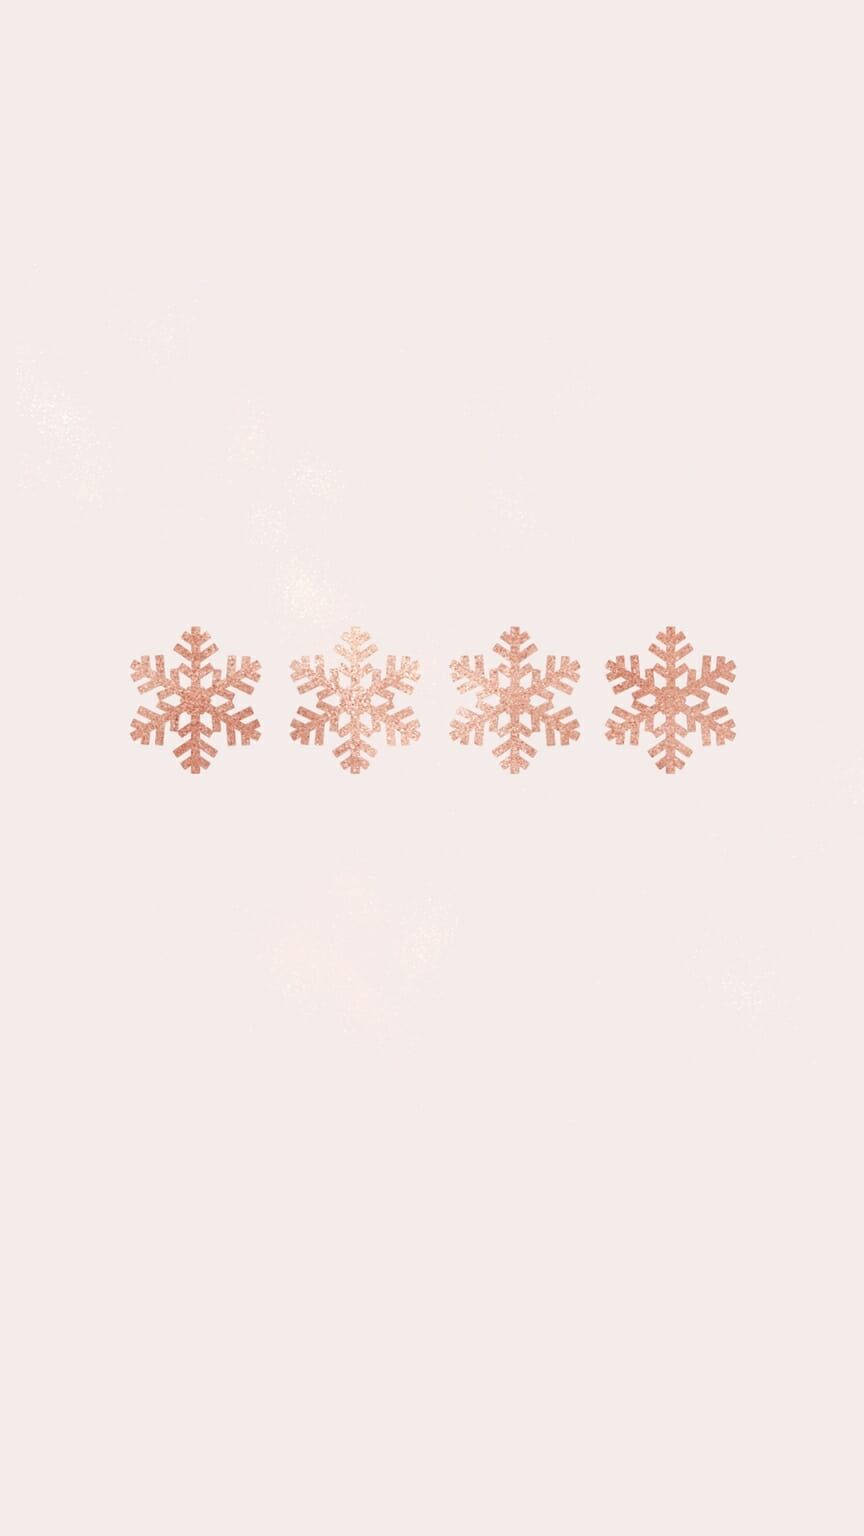 Minimalist Snowflakes Christmas Phone